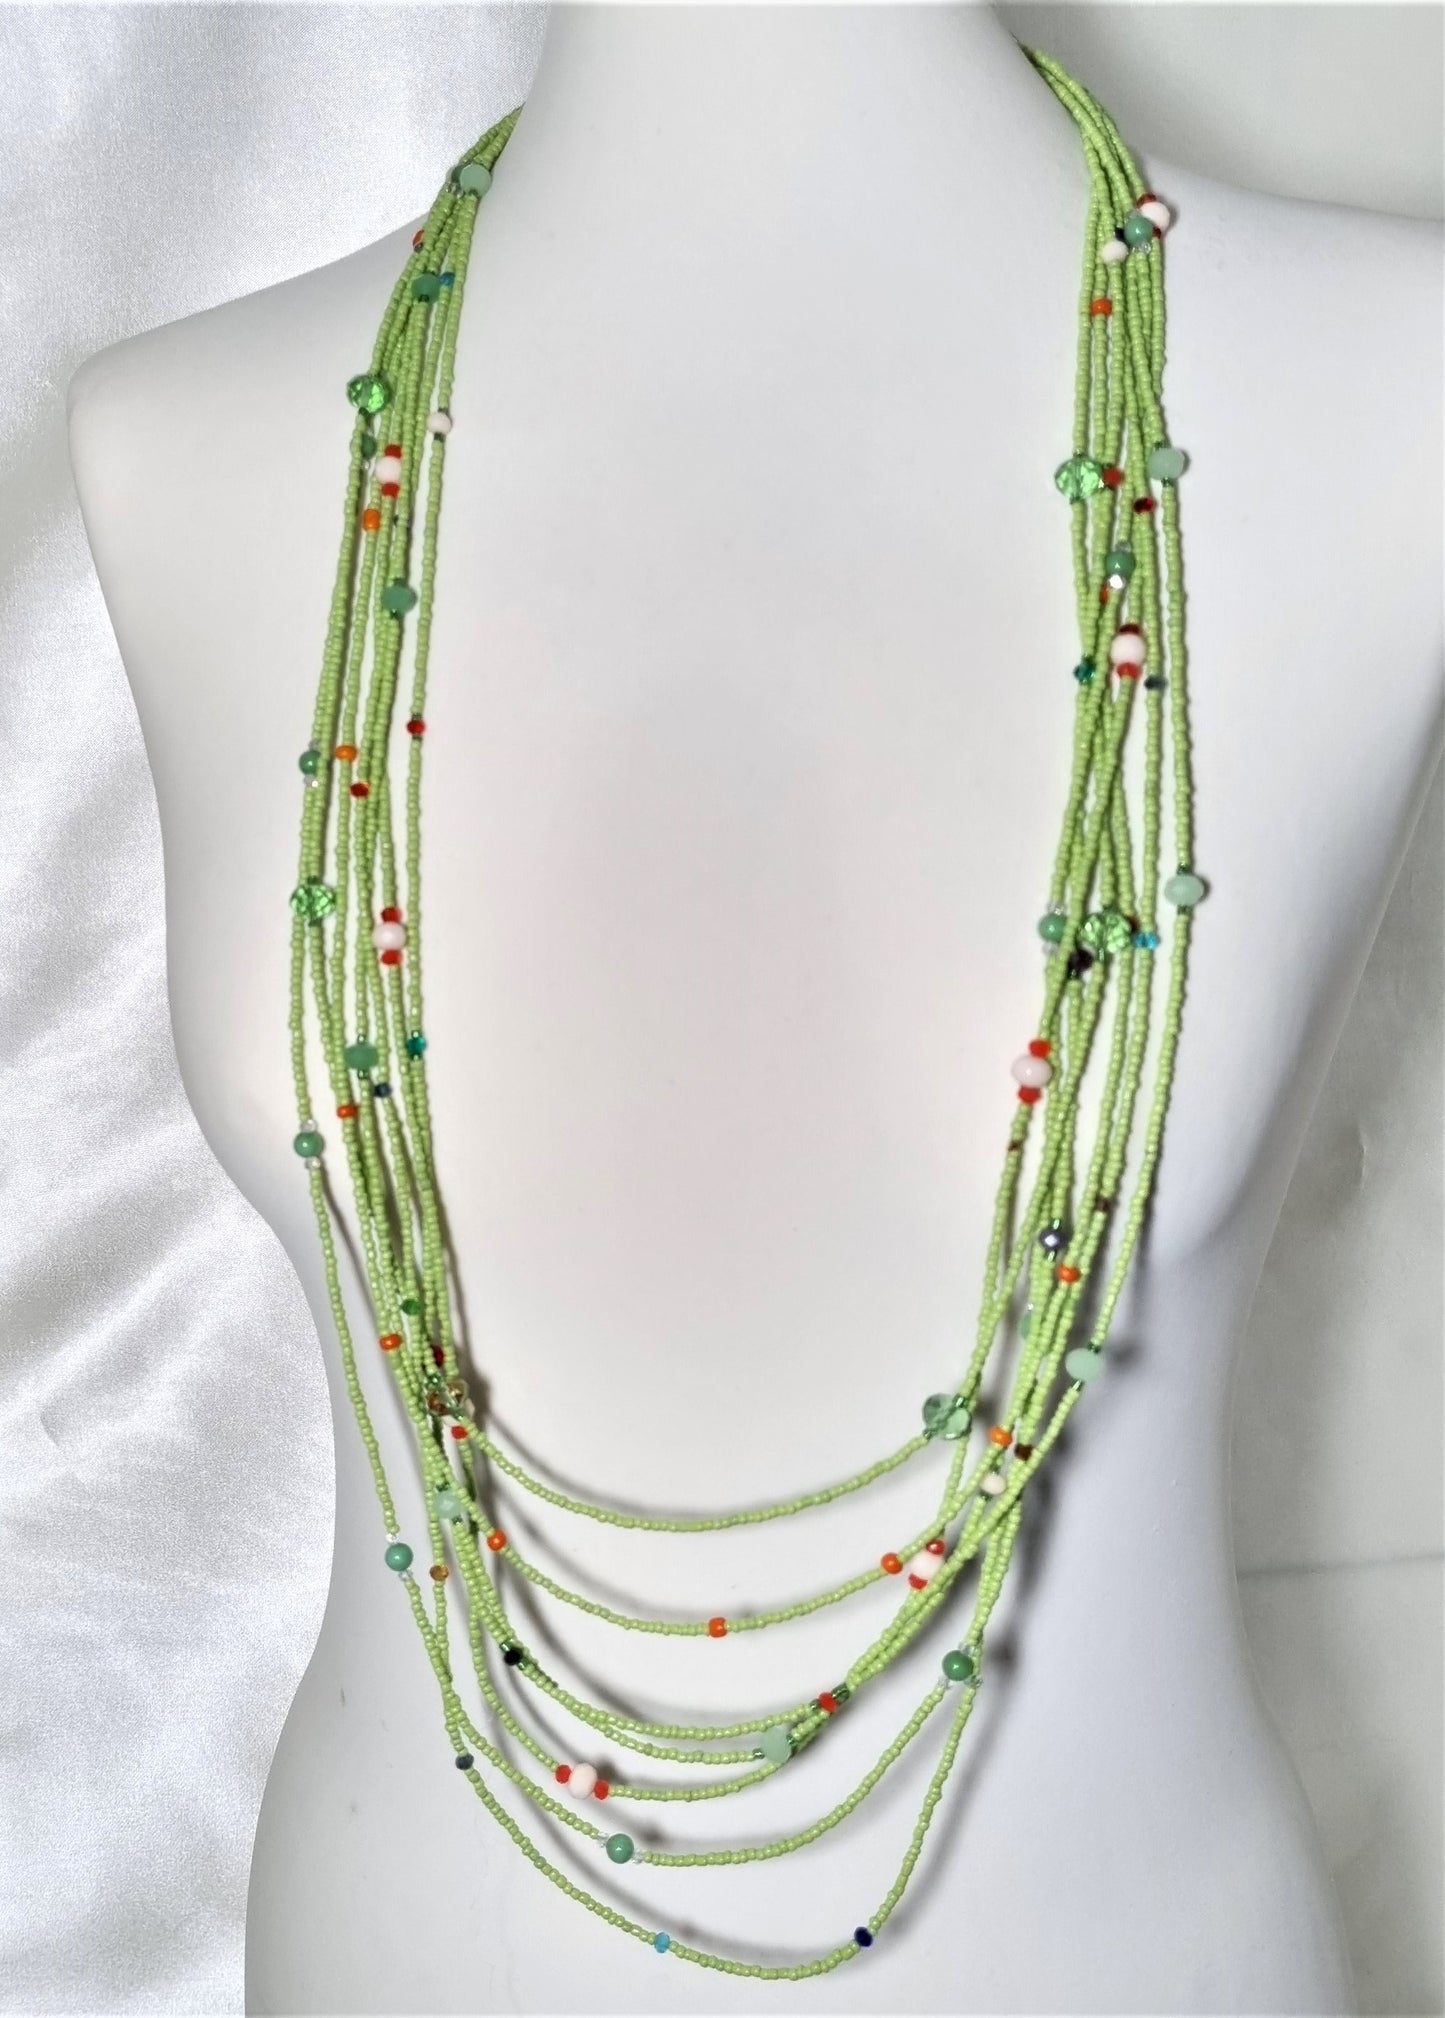 Collana SOPHIA i colori .028 piccolissime perline verde prato e perline colorate come fiori.